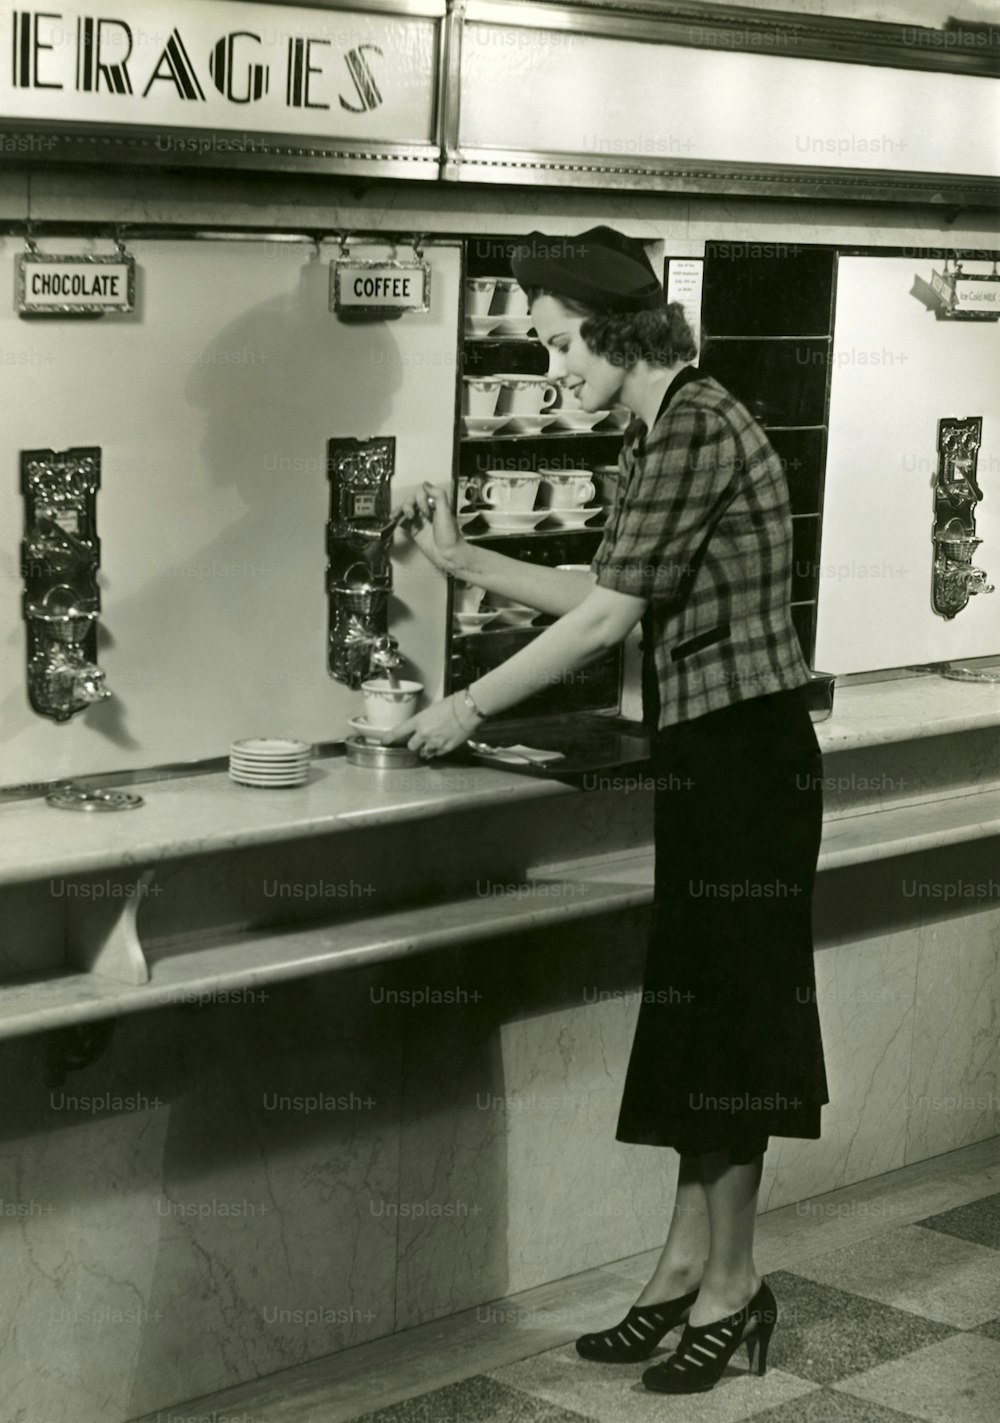 STATI UNITI - 1950 CIRCA: Donna che prende il caffè.